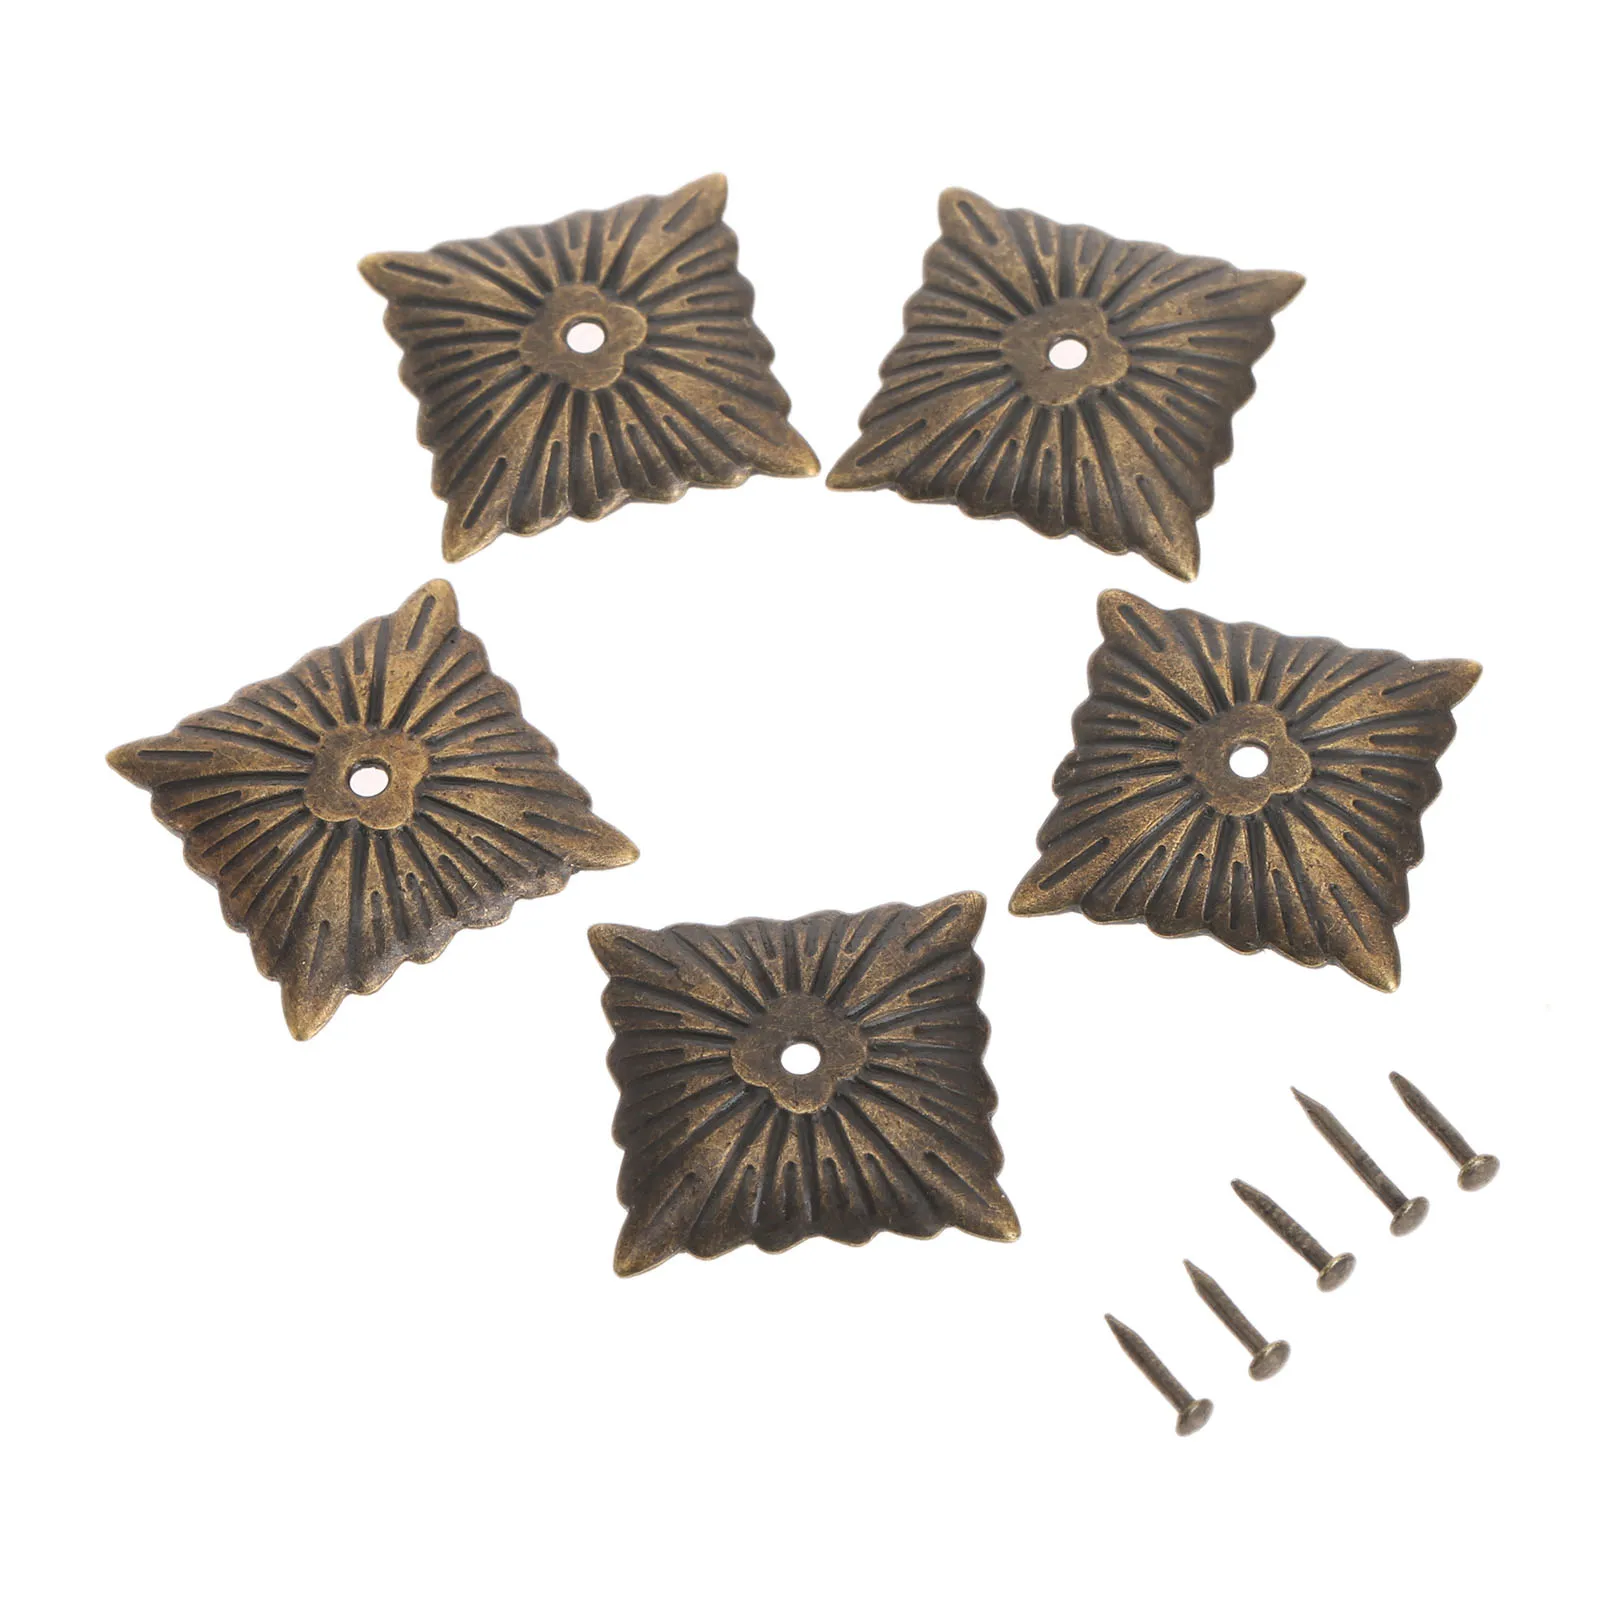 100 шт 21x21 мм железные мебельные гвозди бронзовые античные гвозди для декоративной обивки